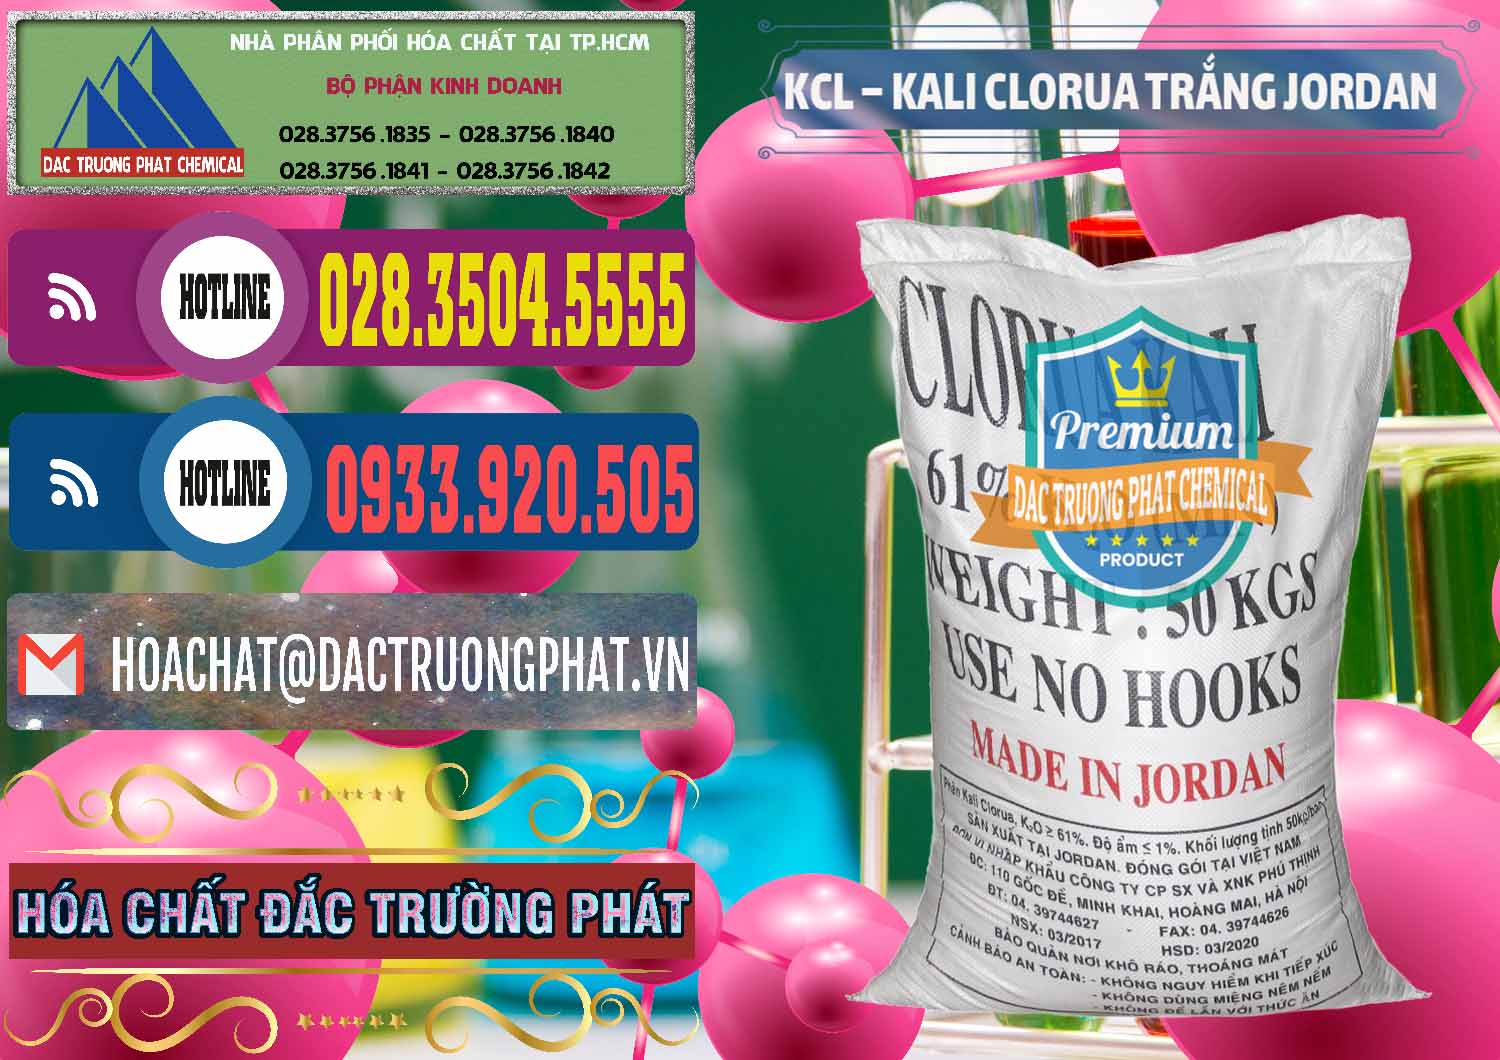 Bán và cung ứng KCL – Kali Clorua Trắng Jordan - 0088 - Nơi chuyên phân phối - kinh doanh hóa chất tại TP.HCM - muabanhoachat.com.vn